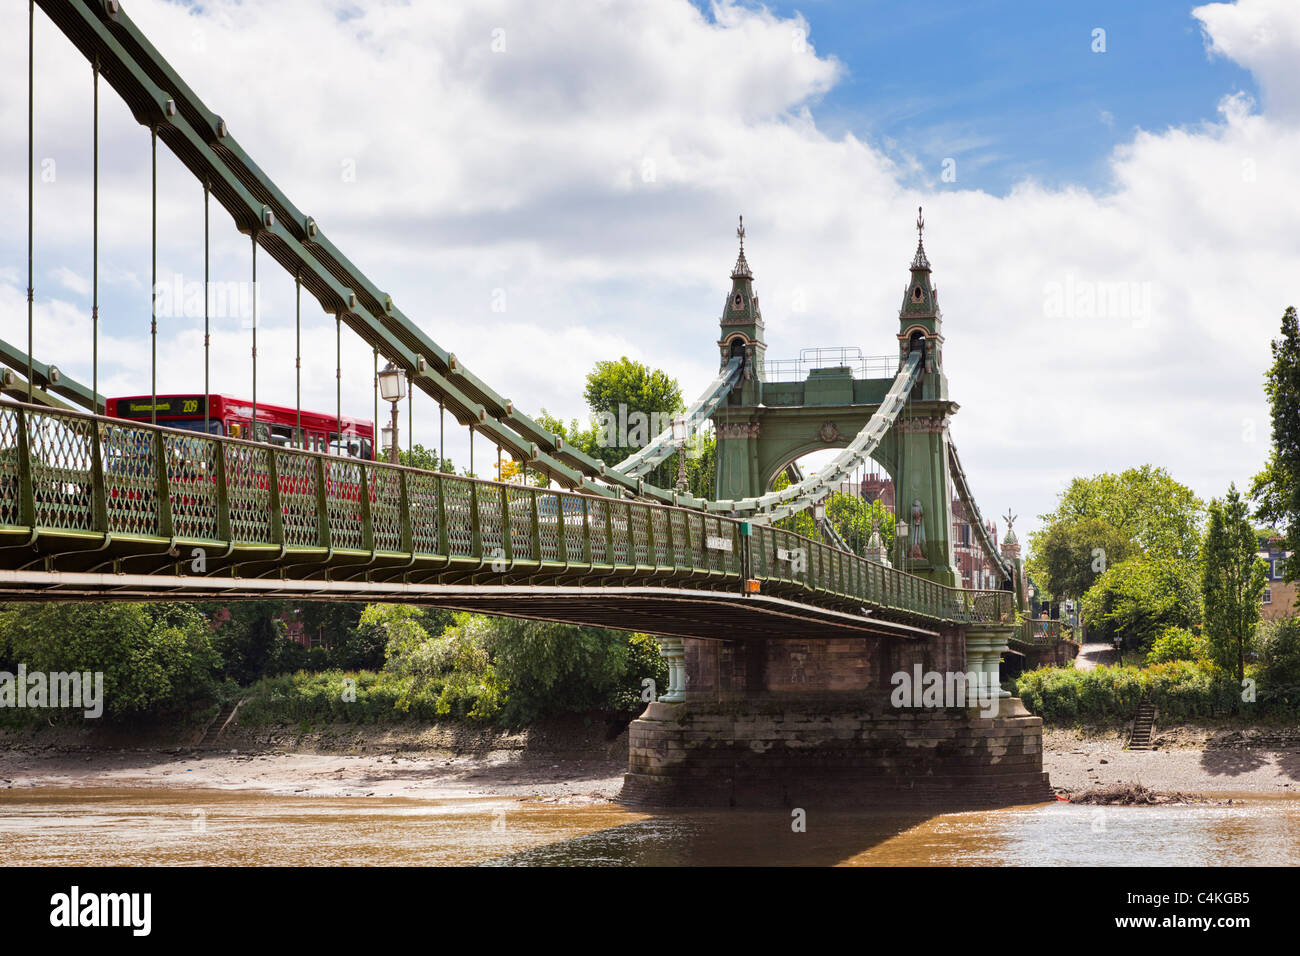 London Bus attraversando Hammersmith Bridge sul fiume Thames, London, England, Regno Unito Foto Stock